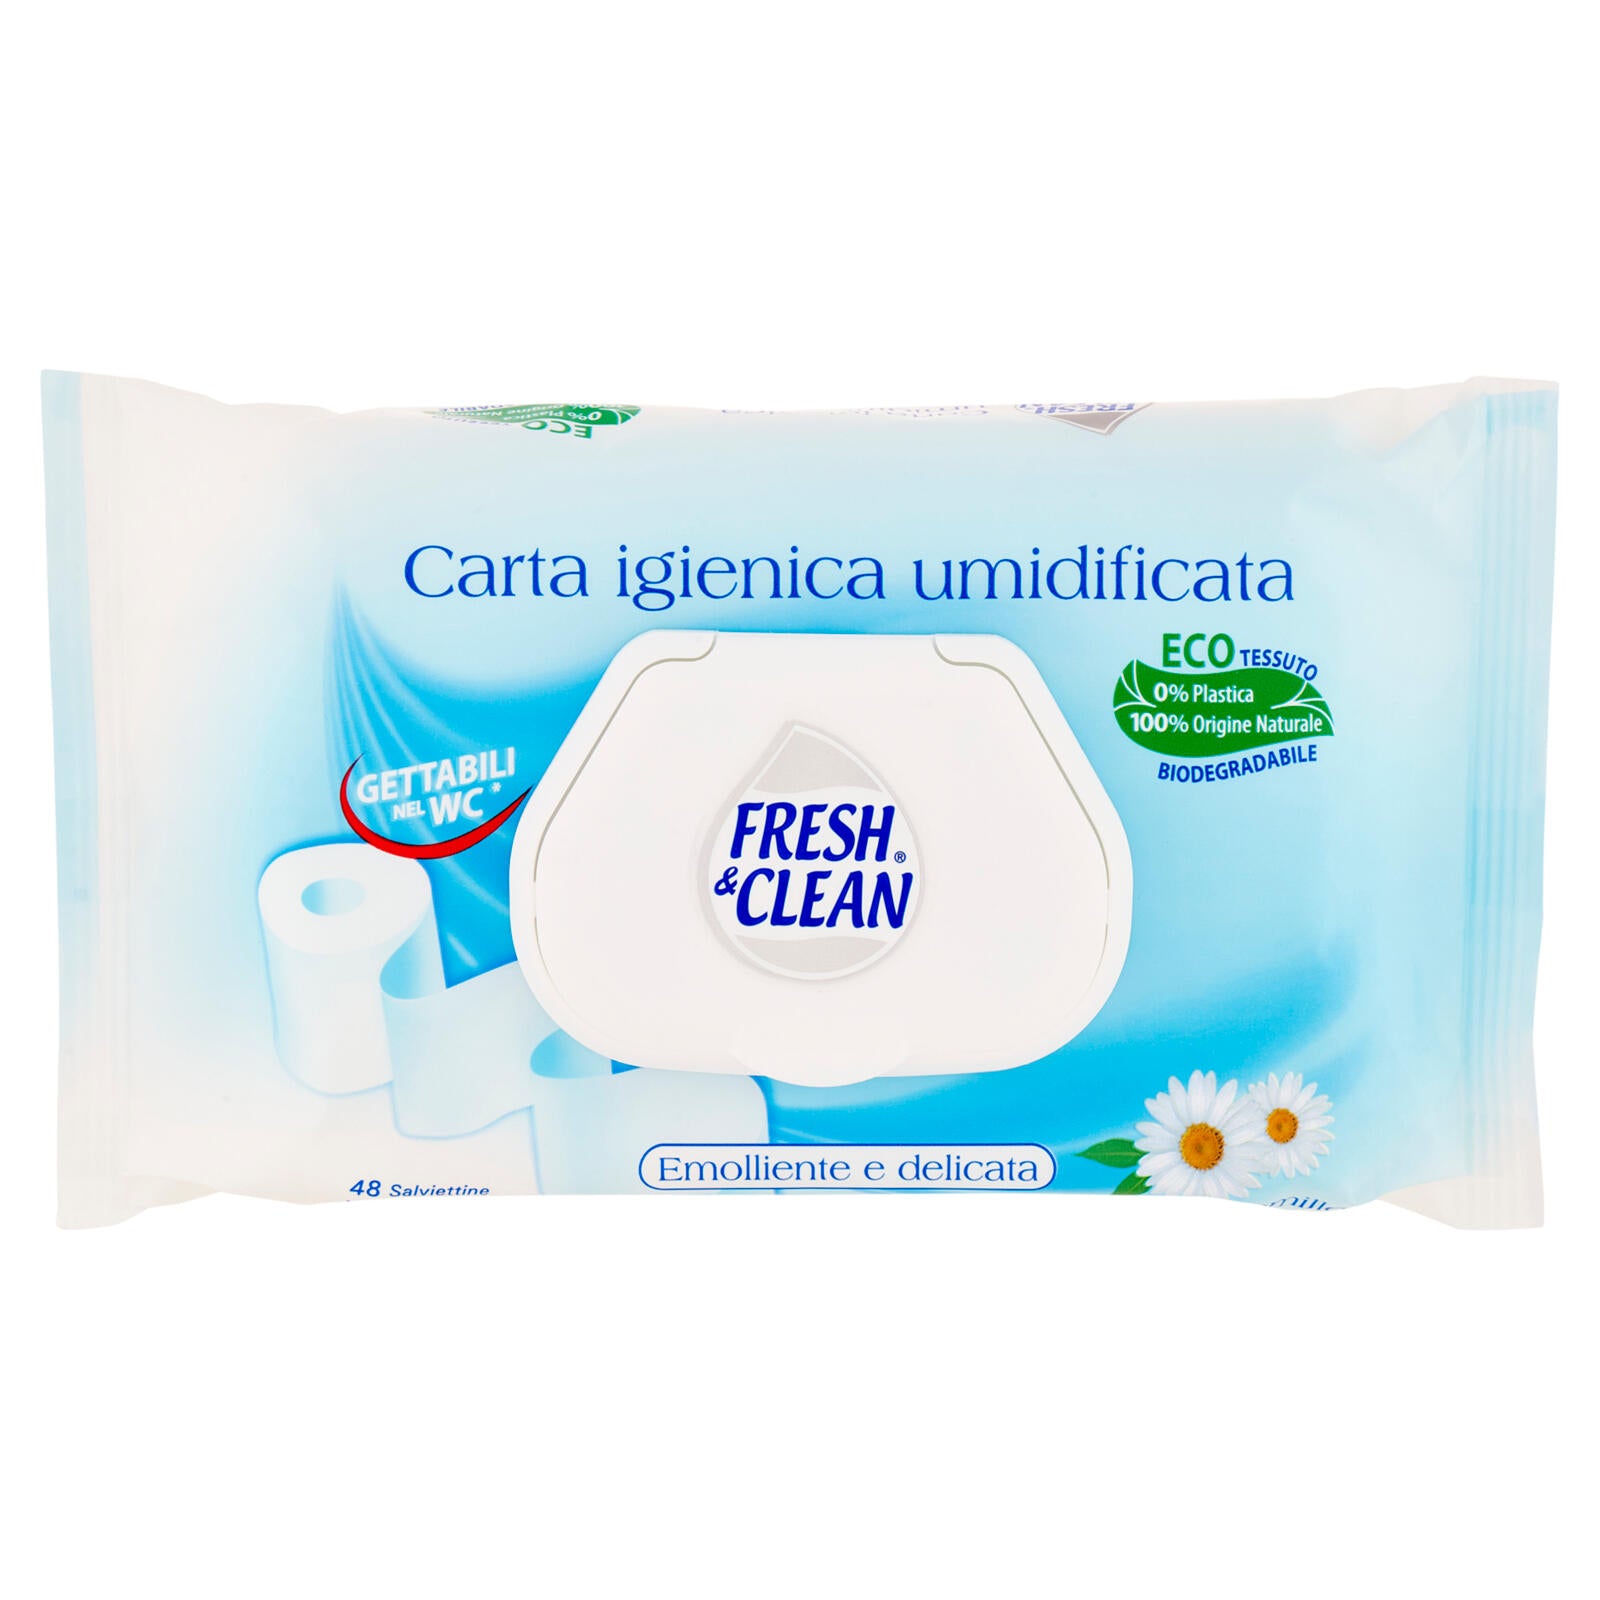 Fresh & Clean Carta igienica umidificata Salviettine alla